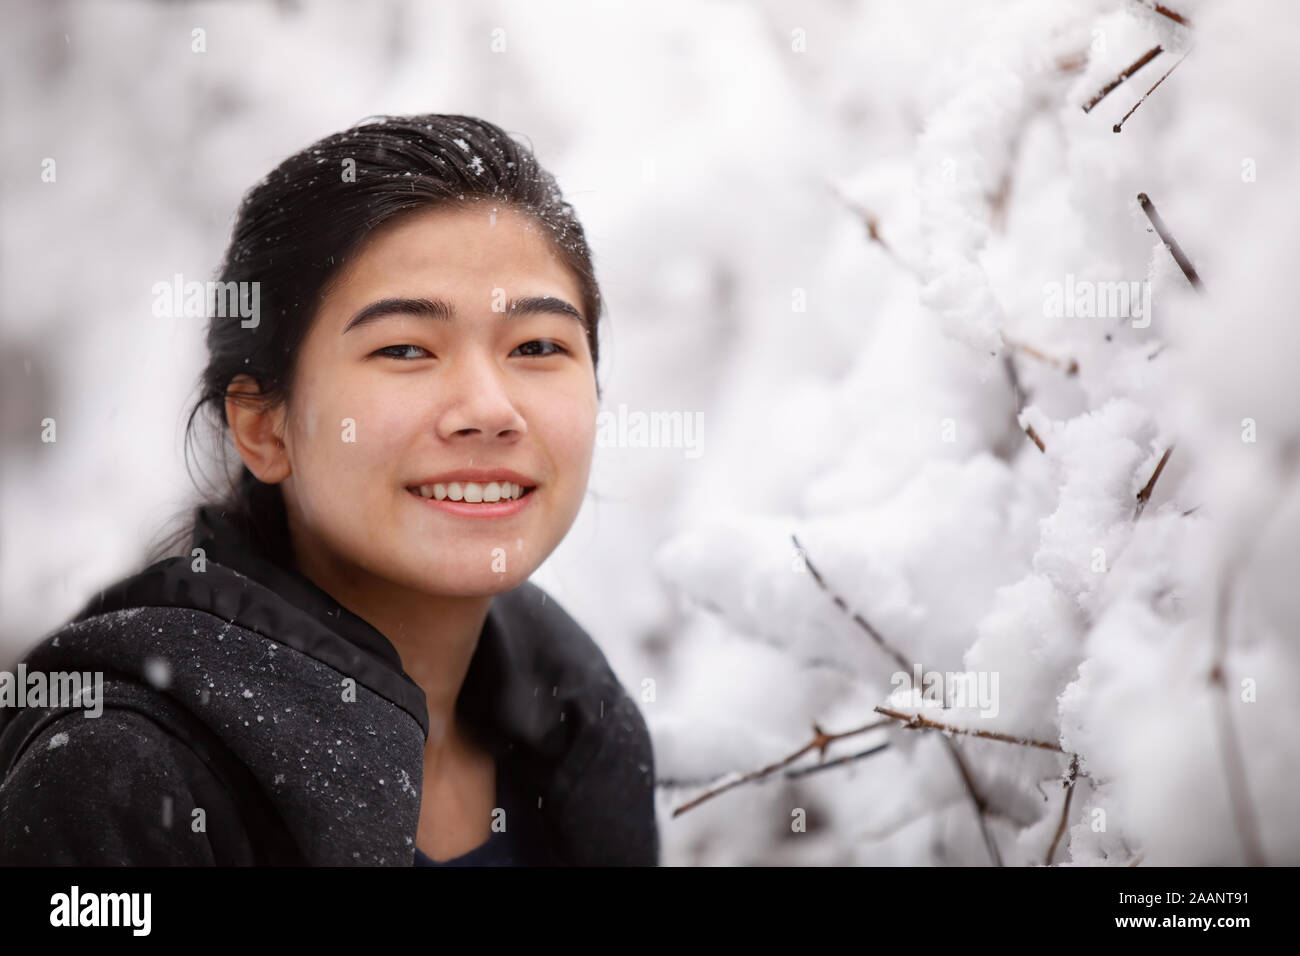 Biracial teen girl or young woman outdoors in winter enjoying fresh snow fall Stock Photo